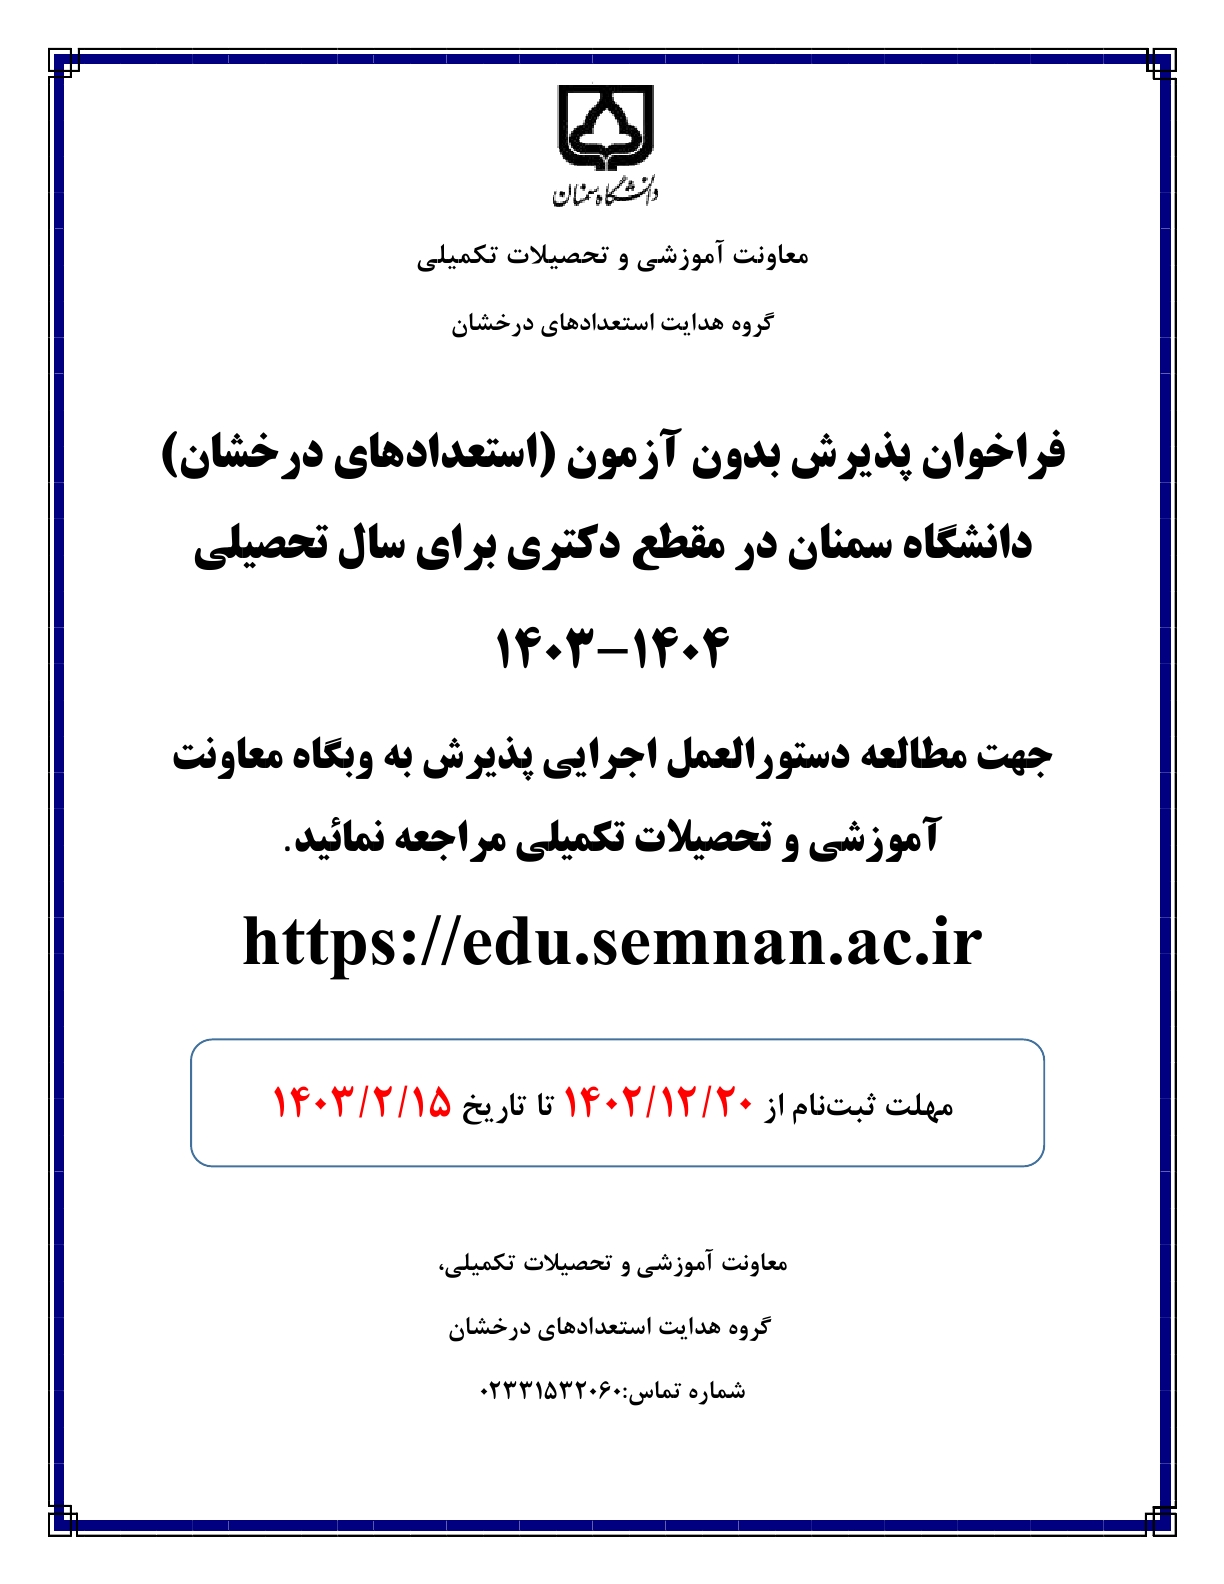 فراخوان پذیرش دکتری استعدادهای درخشان دانشگاه سمنان 1403